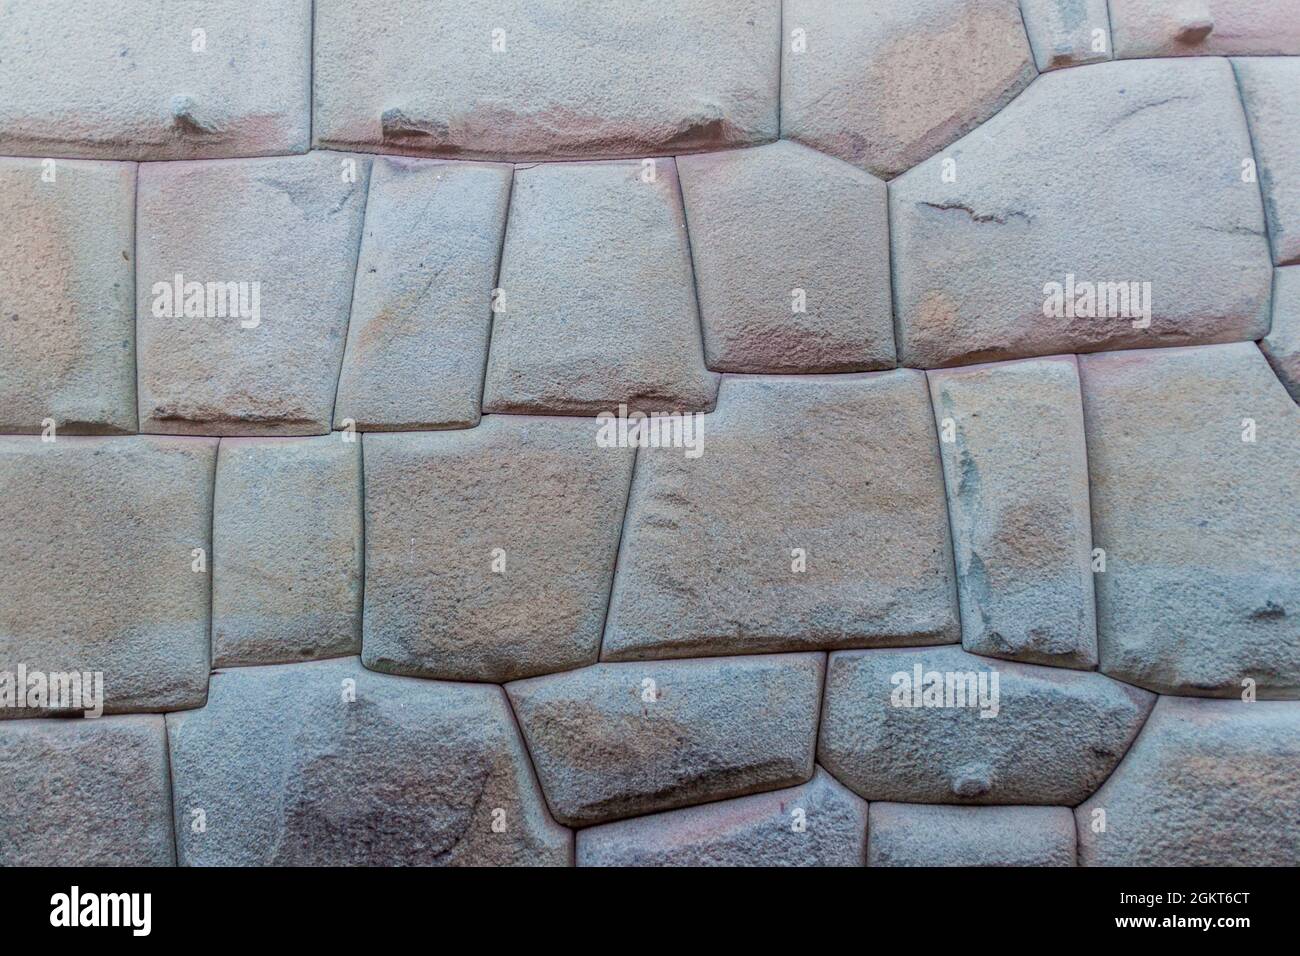 Detail des perfekten Steinwerks von Inca. Mauer des ehemaligen Palastes von Inca Roca in Cuzco, Peru. Stockfoto